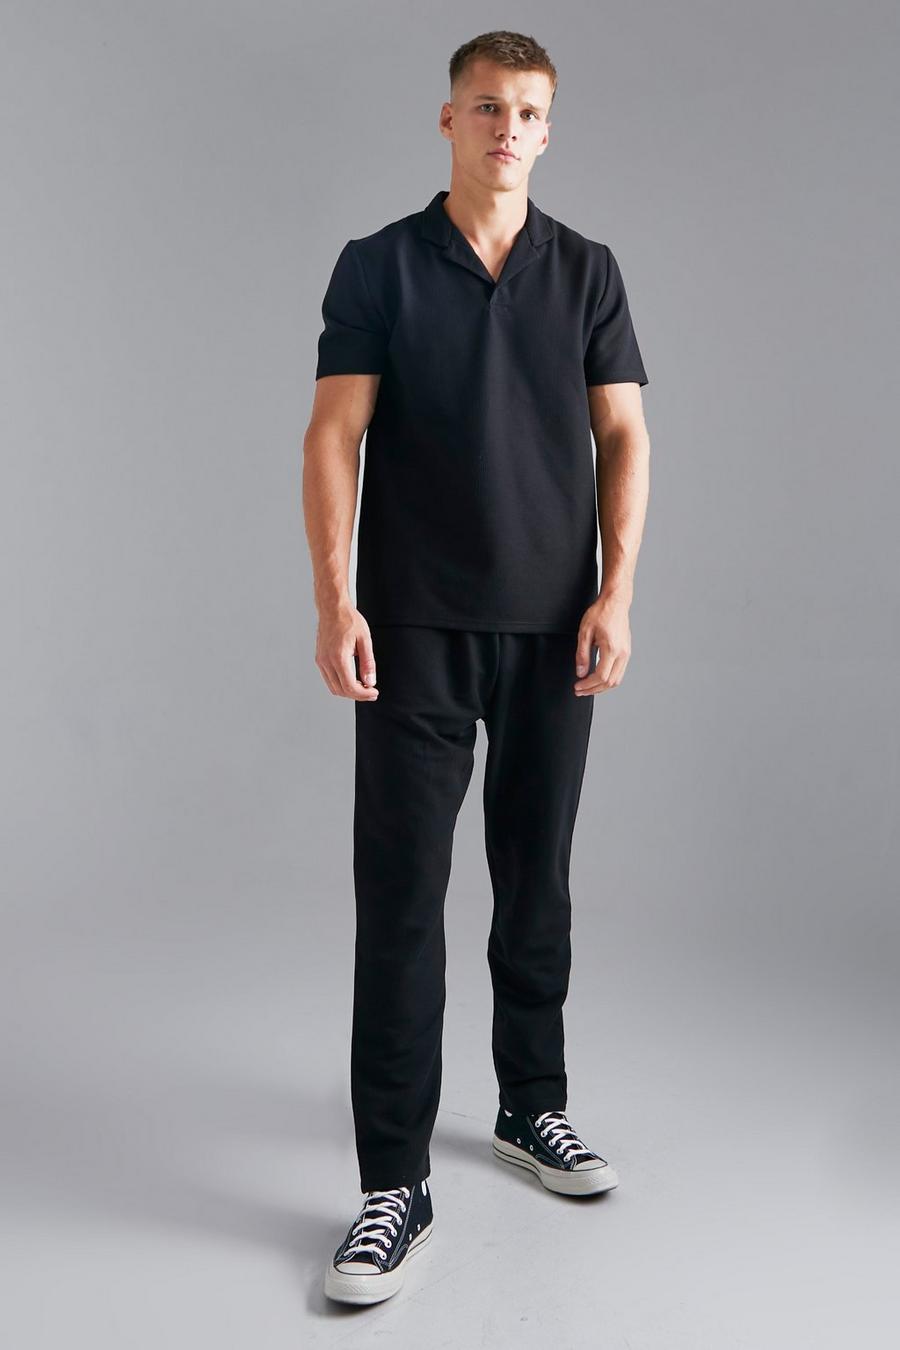 שחור nero סט של מכנסי טרנינג וחולצת פולו ג'קארד עם צווארון שטוח, לגברים גבוהים